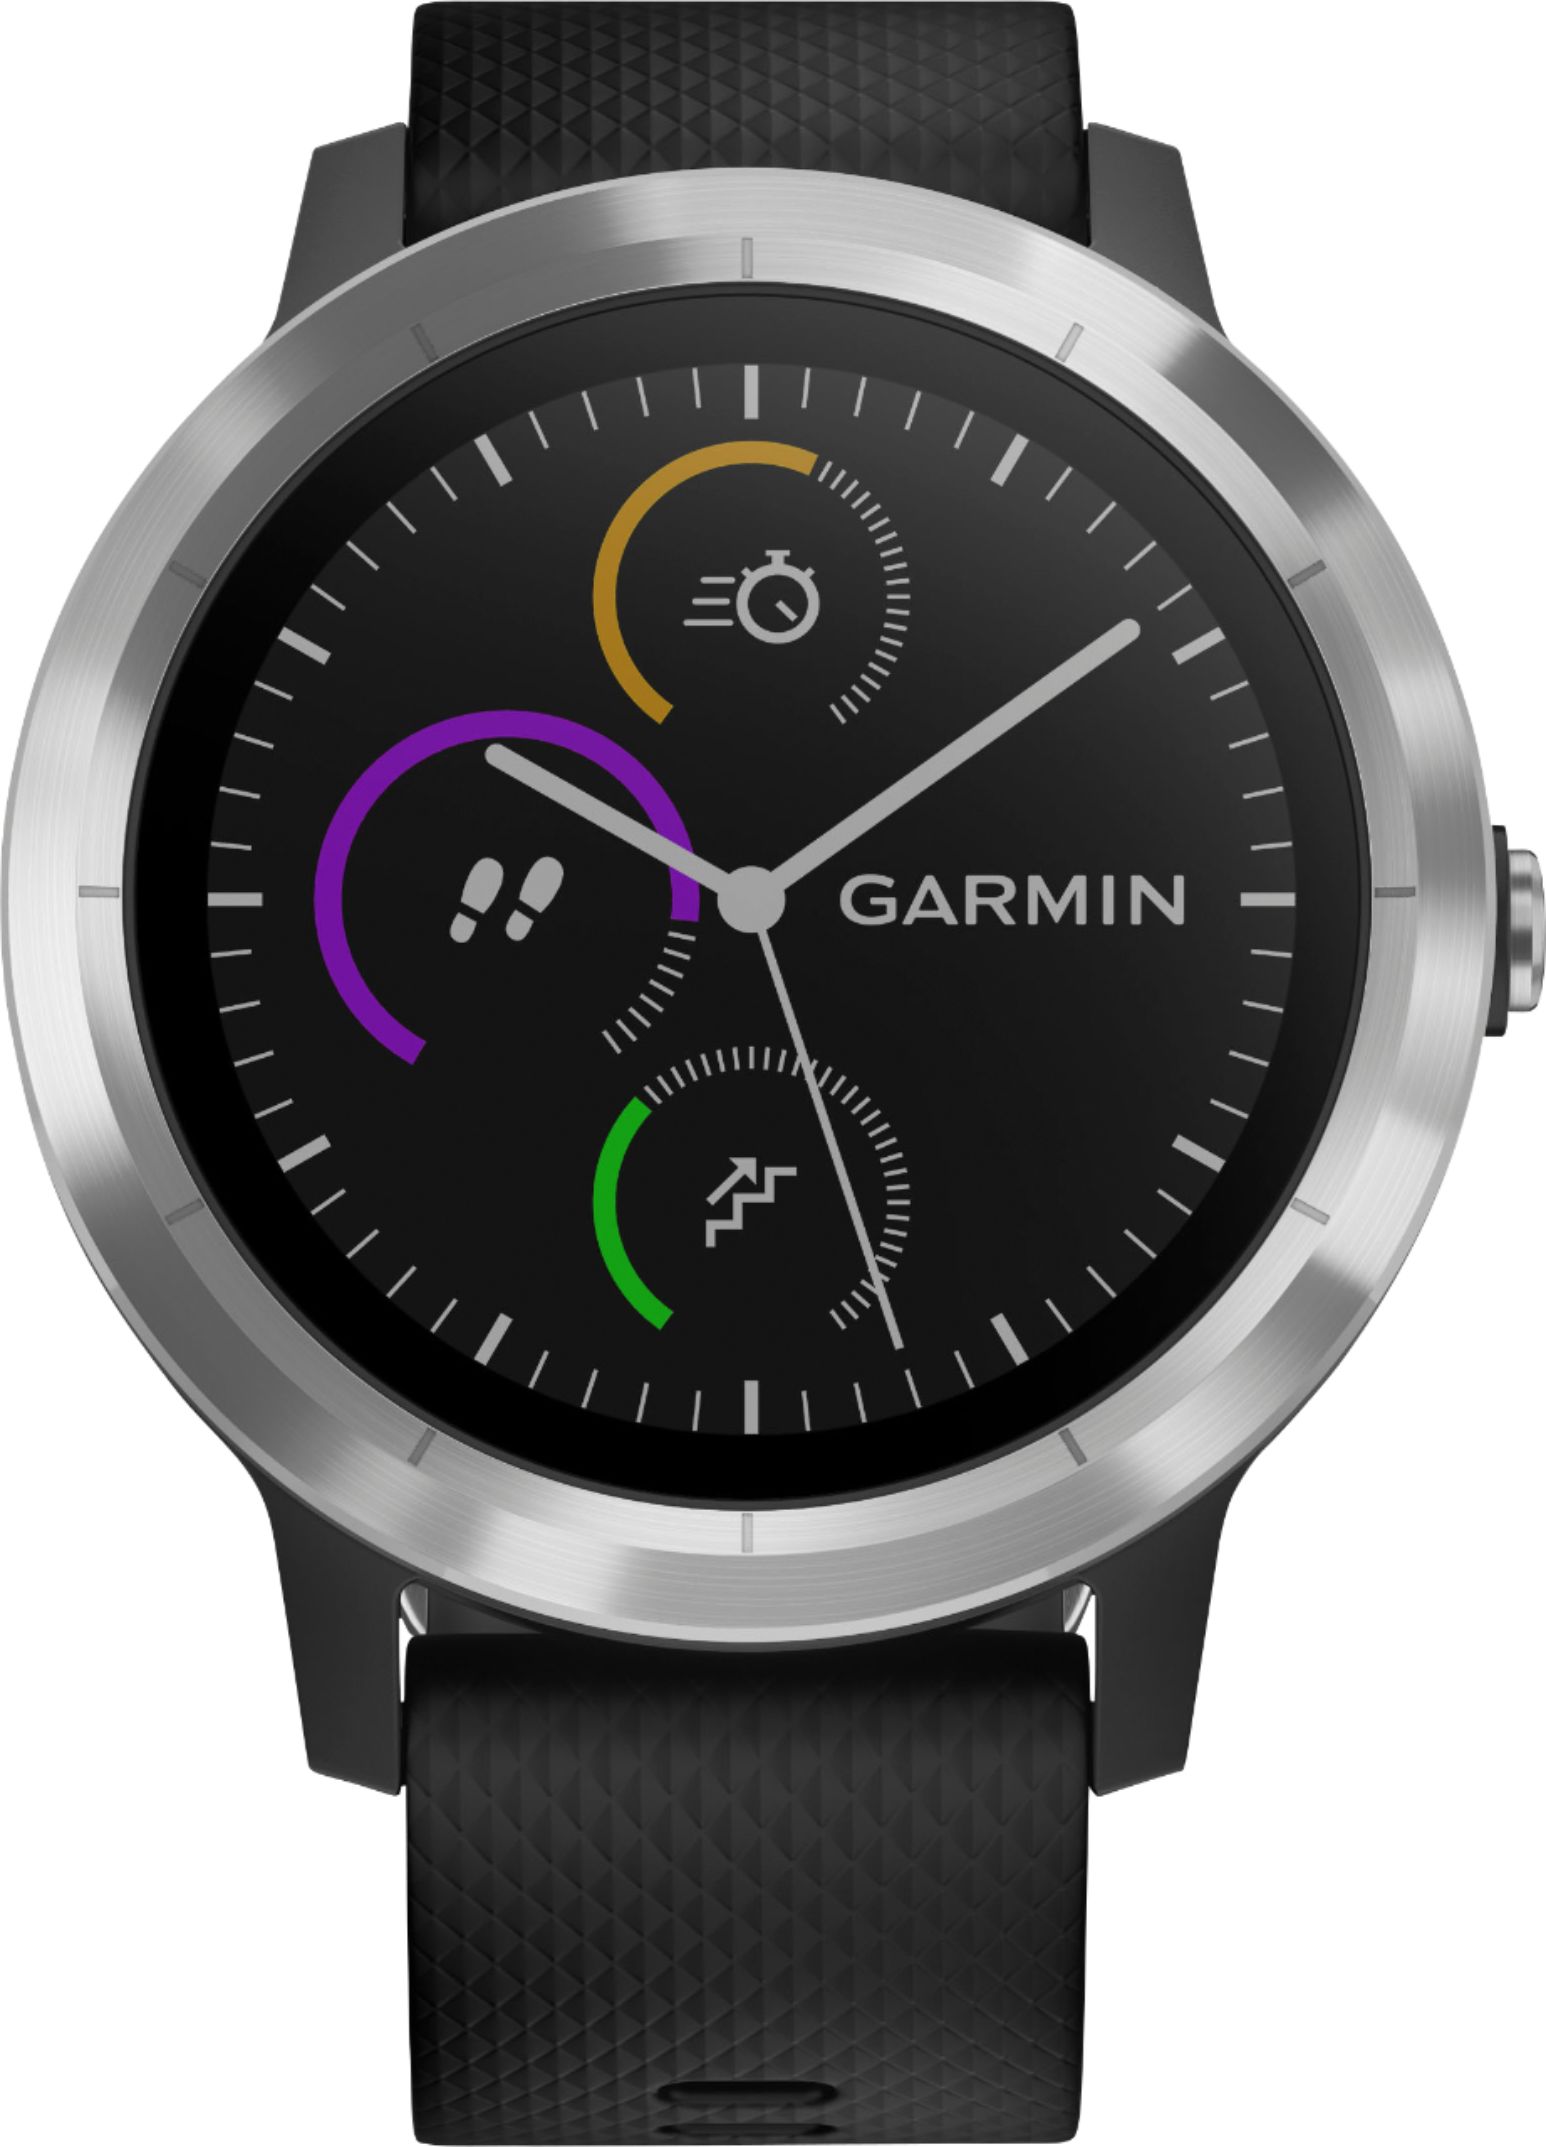 Mentor tilstødende hæk Best Buy: Garmin vívoactive 3 Smartwatch Stainless steel/Black 010-01769-01